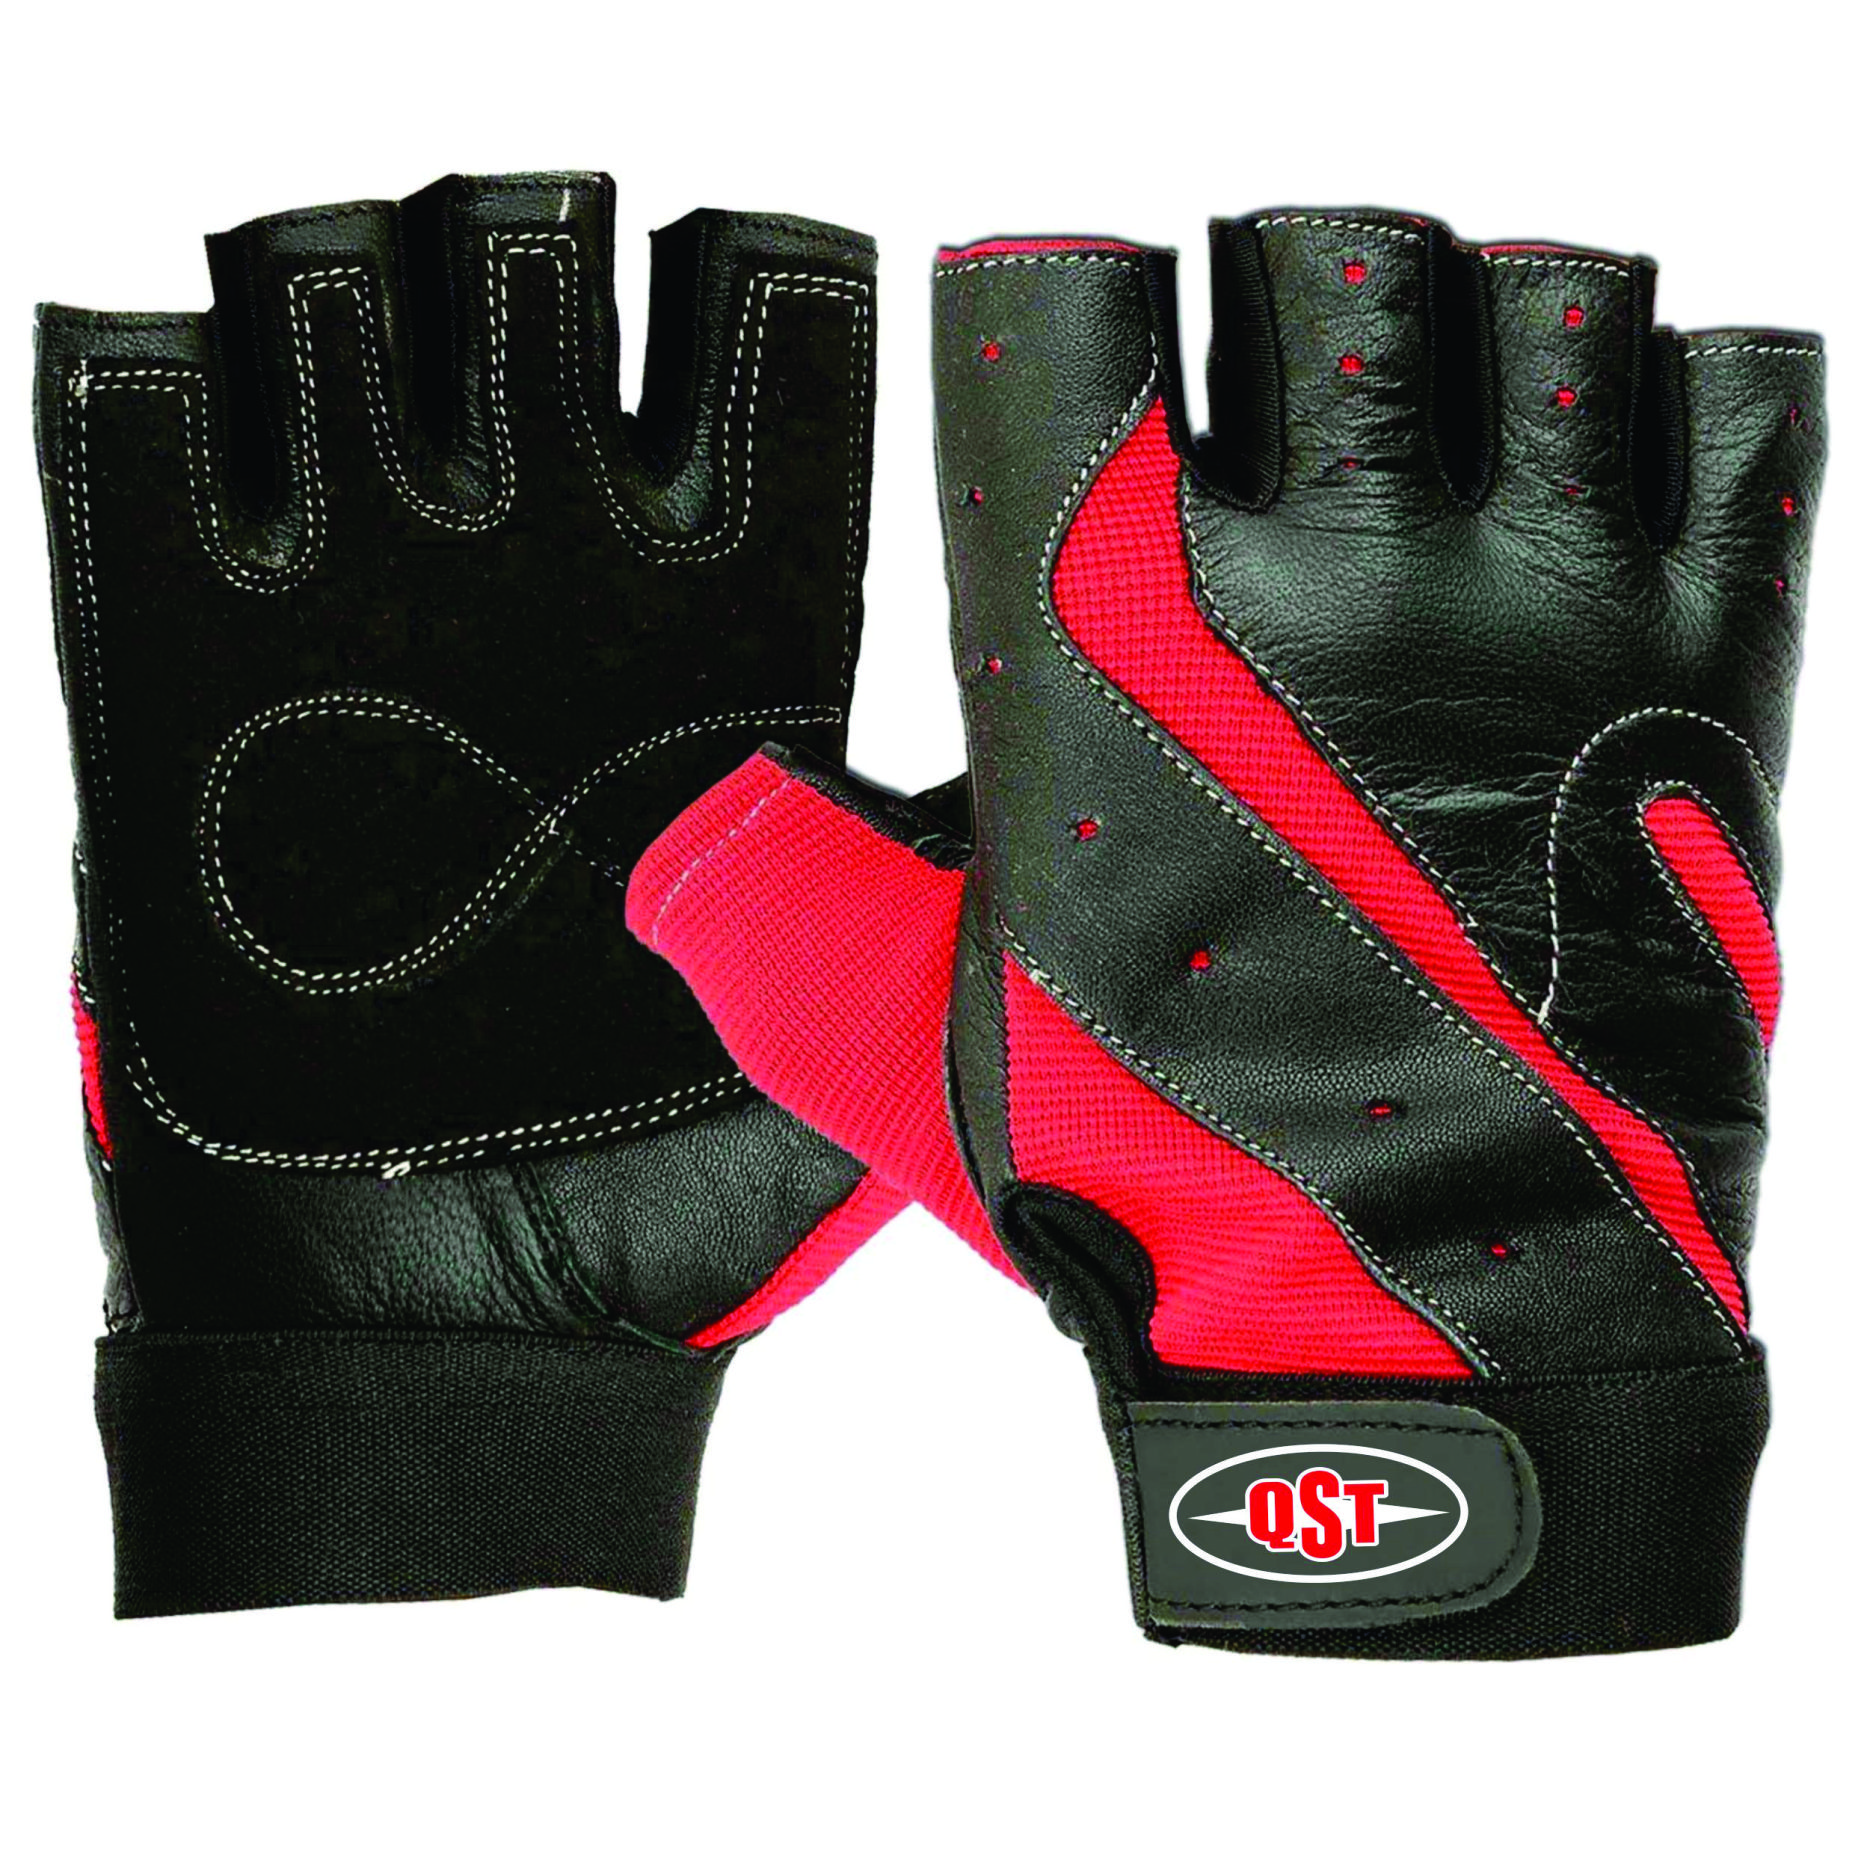 Weigh lifting Gloves Men - QST-9609